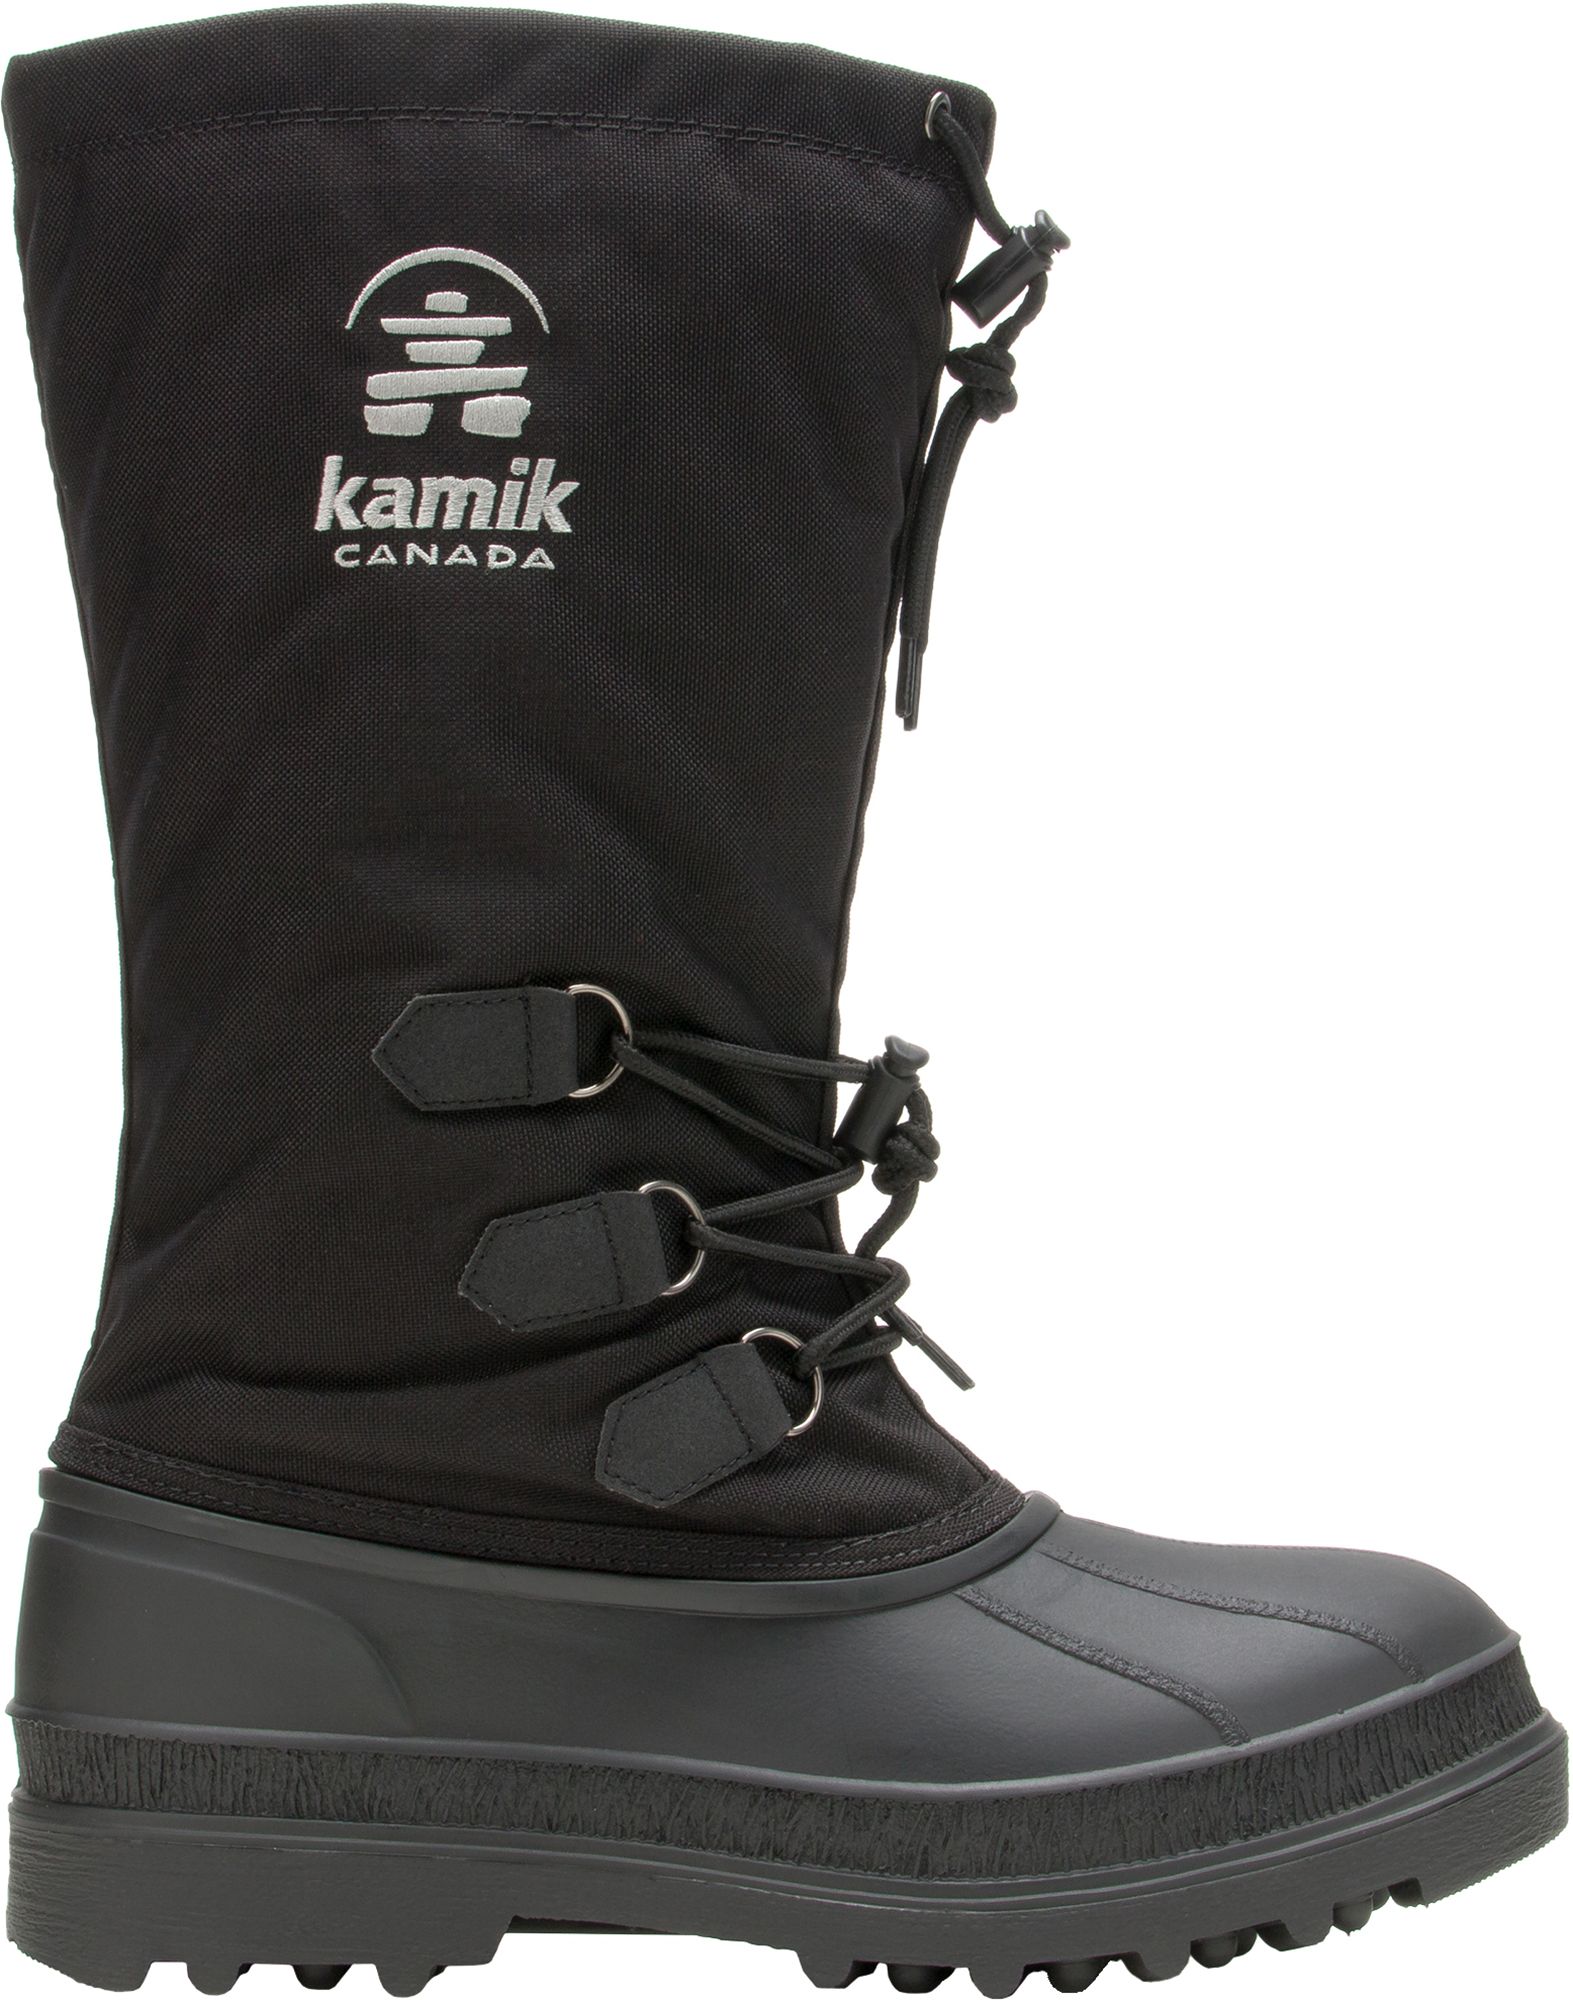 kamik canuck women's winter boots